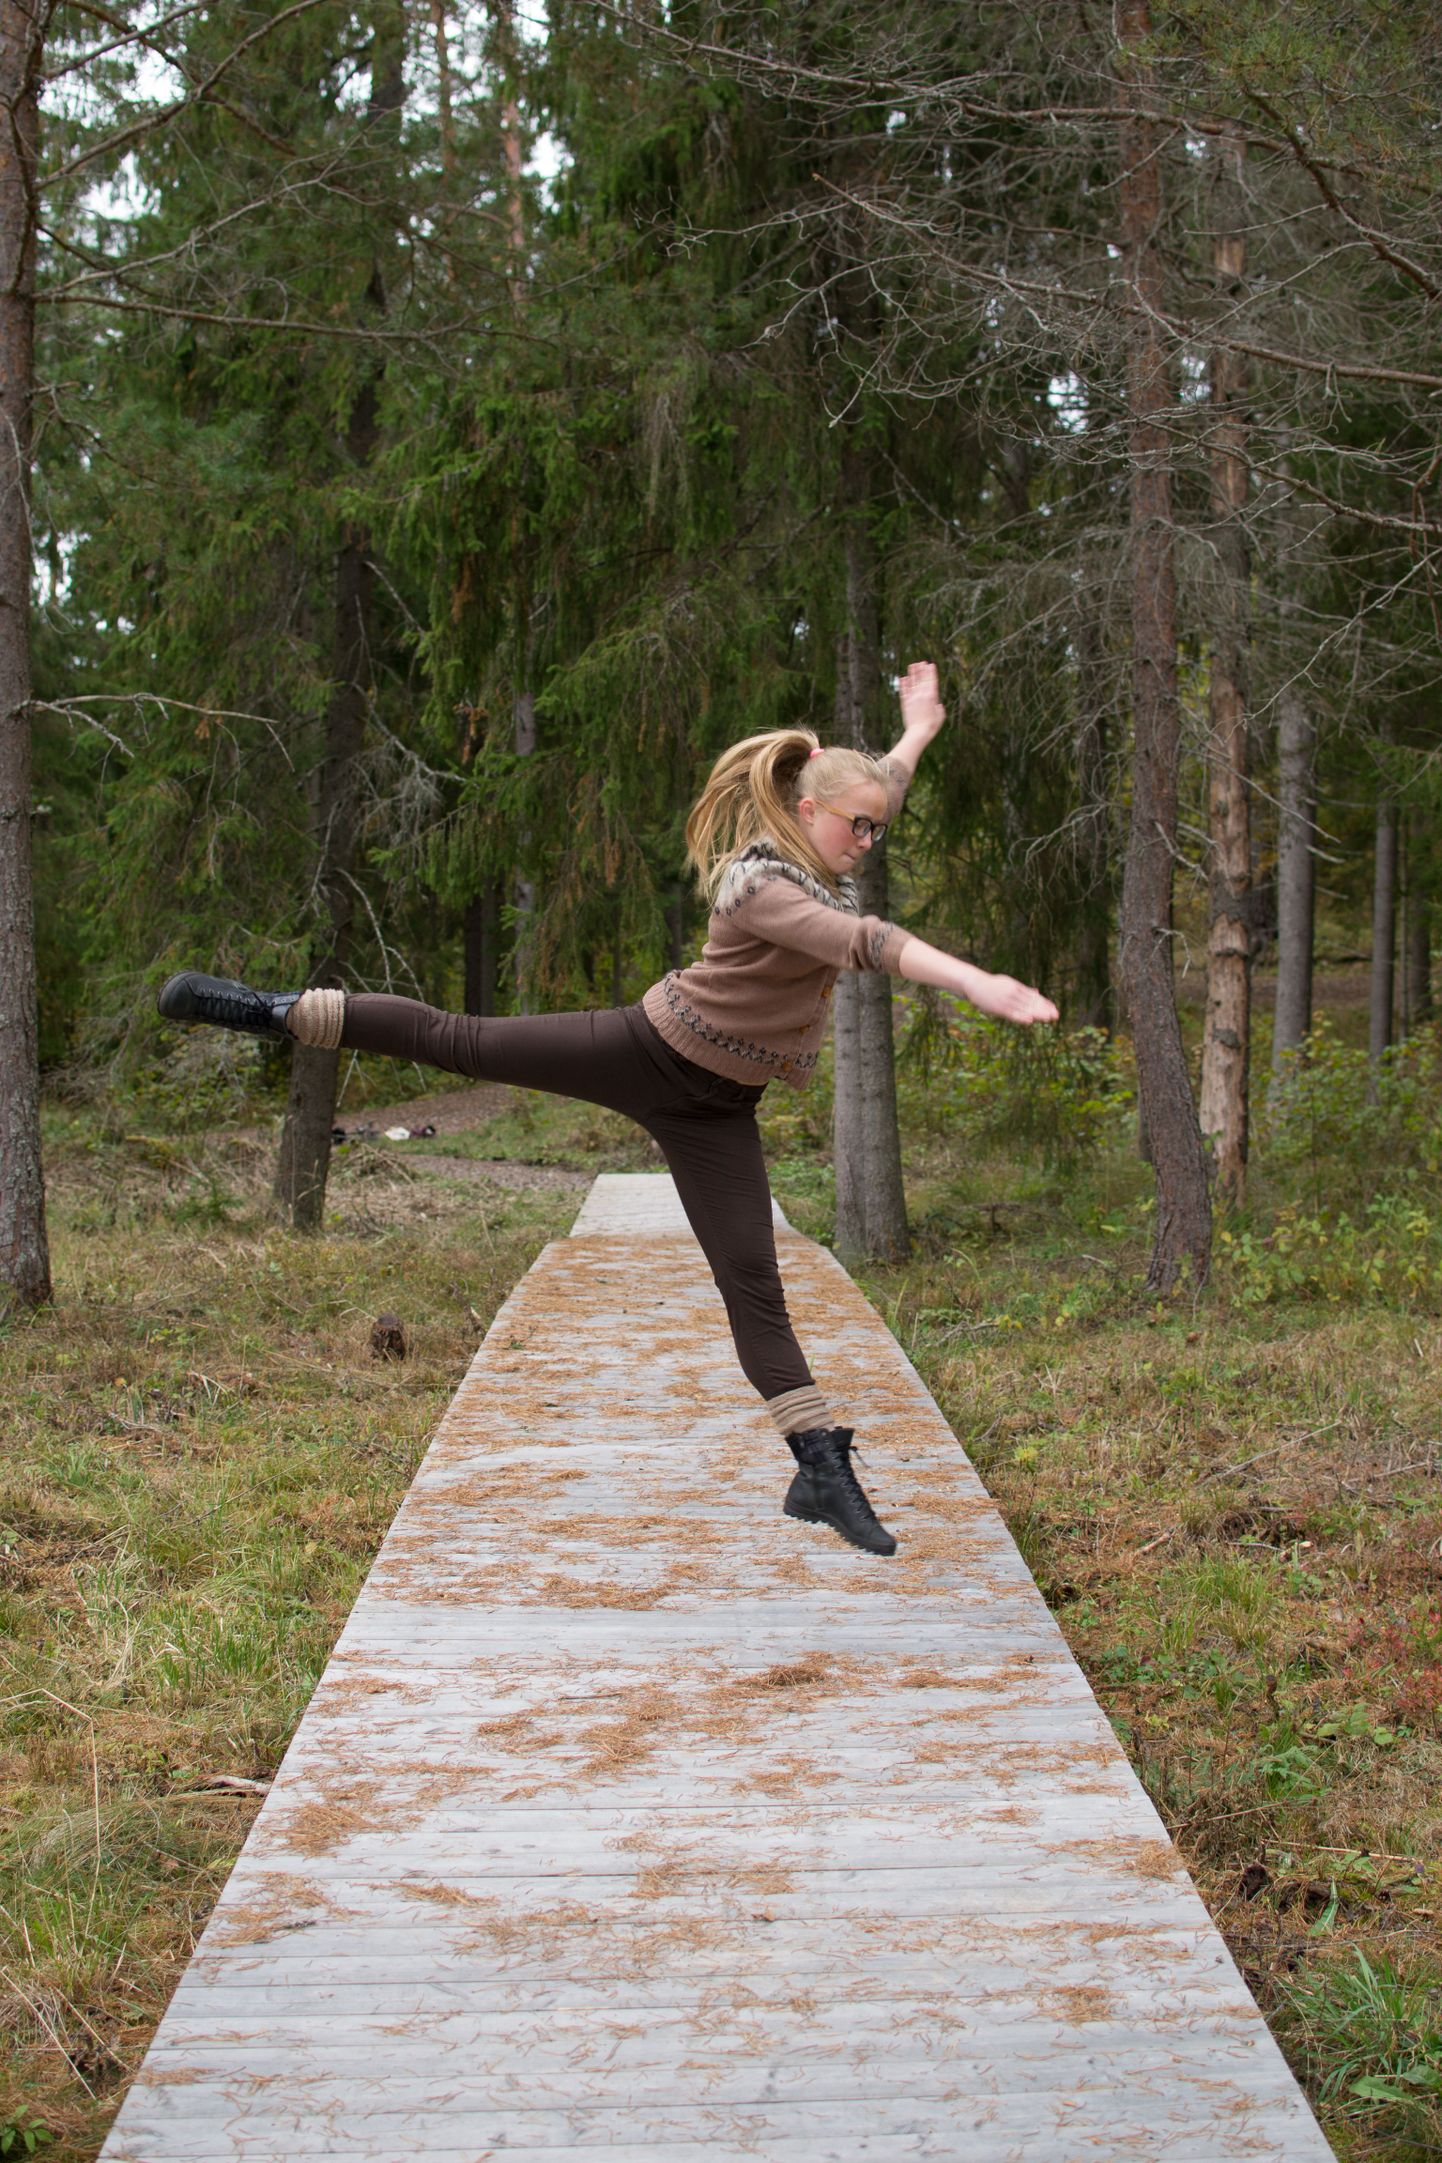 Tõrva gümnaasiumi 7. klassis õppivale Grete-Lisette Gulbisele on tantsimine ja võimlemine ühtaegu tõsine ja meeldiv hobi. Juba homme astub ta Jõhvi kontserdisaalis saates «Tantsuhullus» võistlustulle 13 noore tantsijaga üle Eesti, kus parim noor tantsija selgub rahvahääletuse tulemusena.